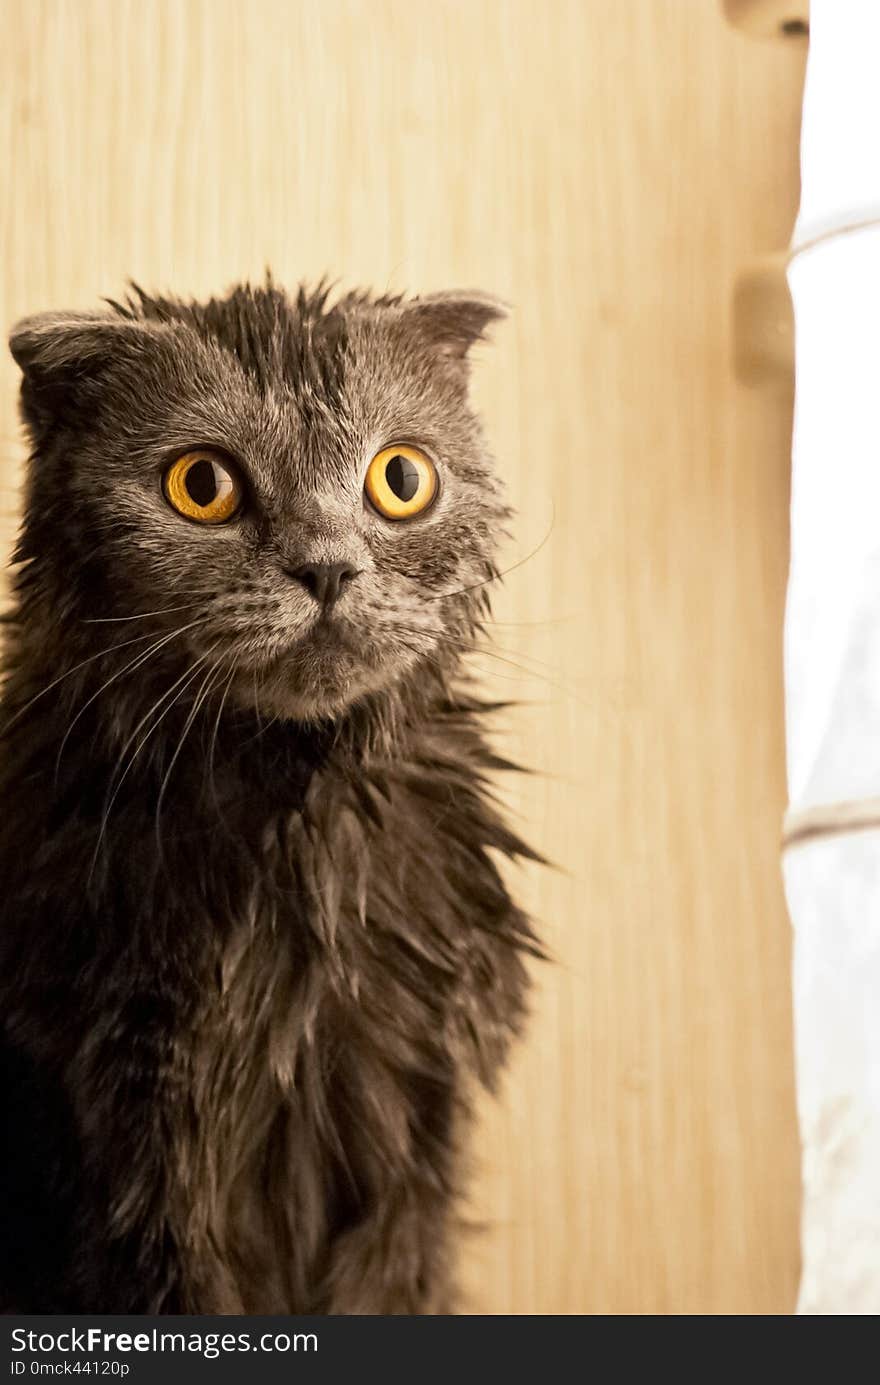 Kitten is wet after a bath